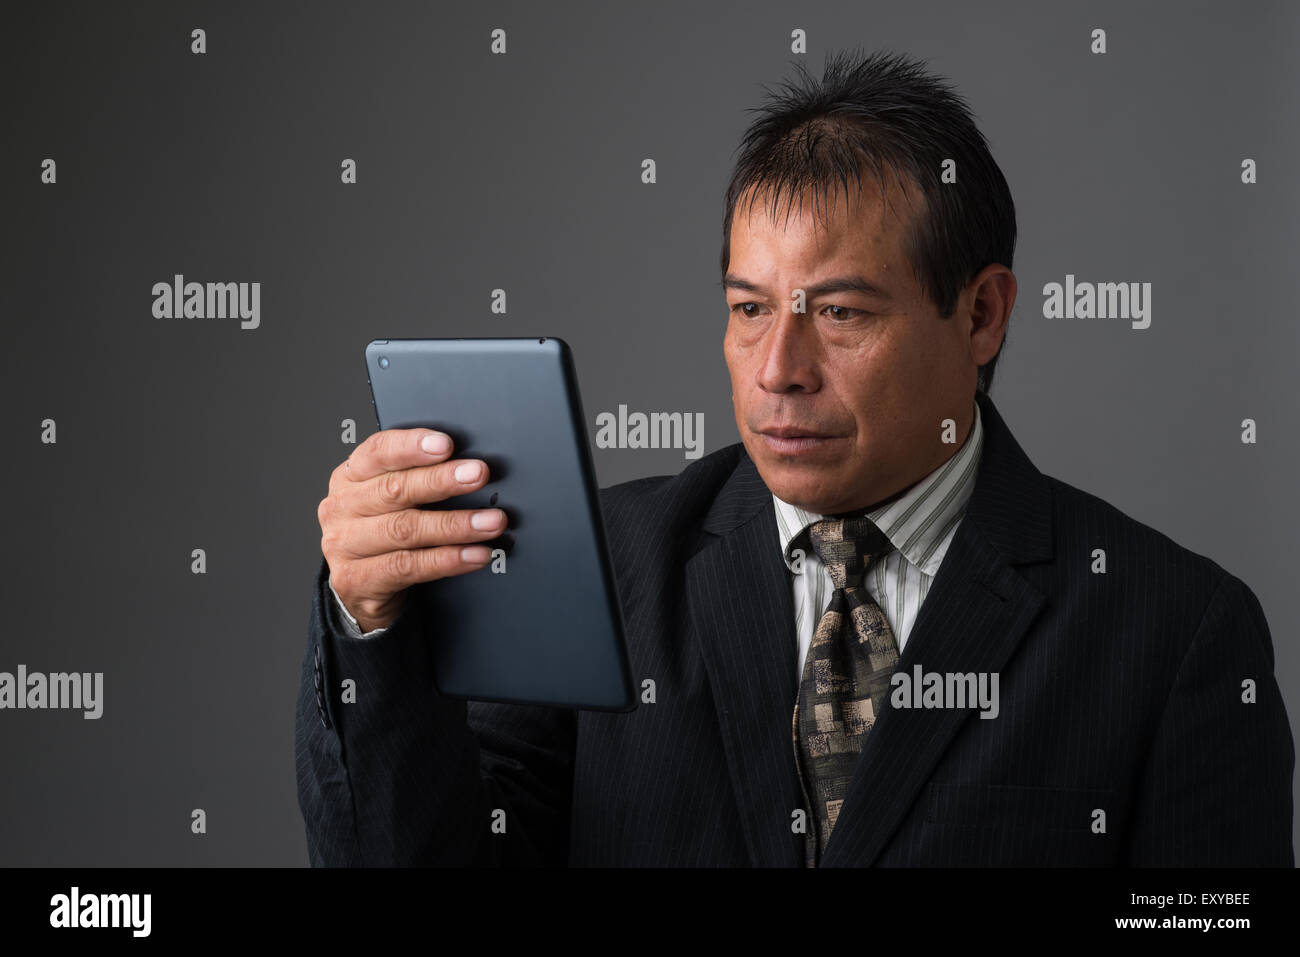 Hispanic Geschäftsmann hält ein Ipad Tablet lesen, auf der Suche, ernst und konzentriert. Stockfoto